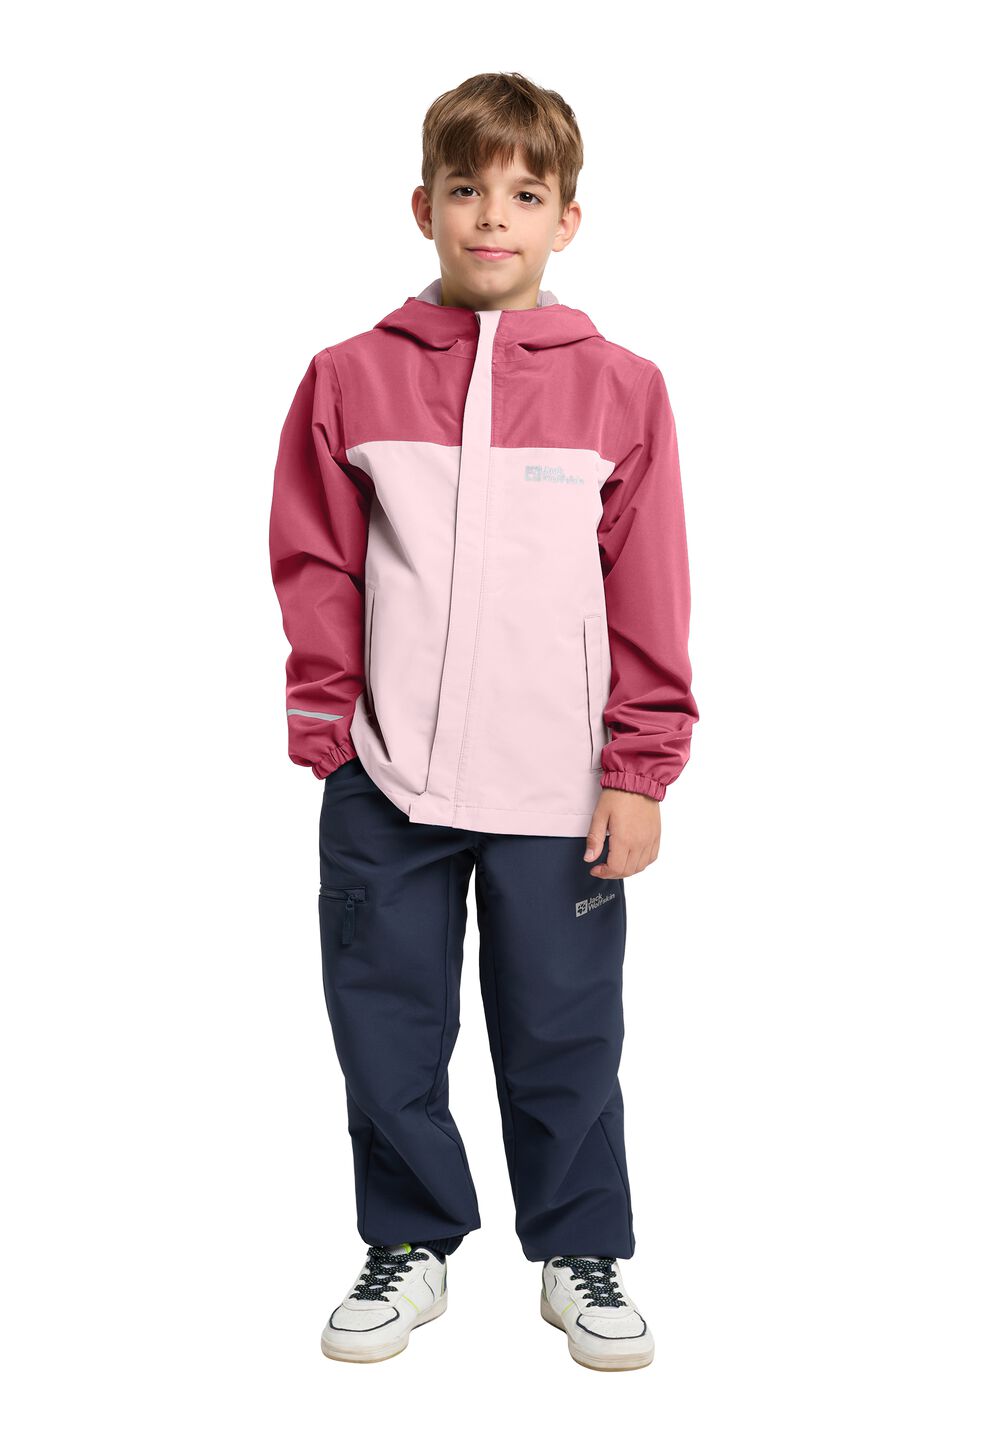 Jack Wolfskin Regenjacke Kinder Tucan Jacket Kids 176 soft pink soft pink von Jack Wolfskin